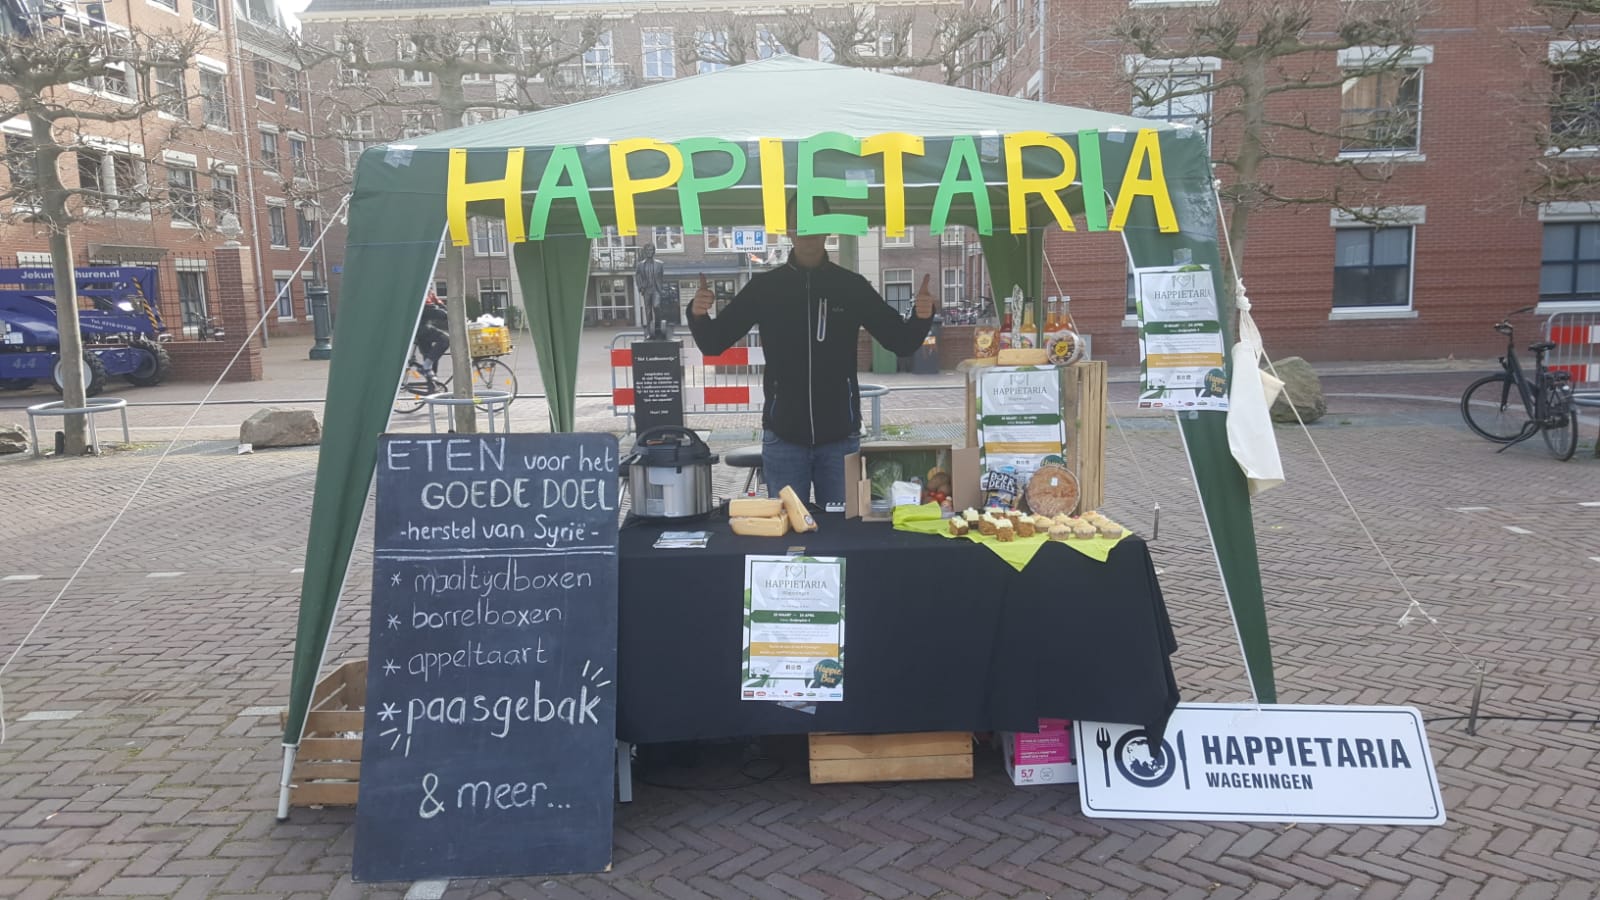 Happietariakraam op de markt in Wageningen boxen te verkopen.